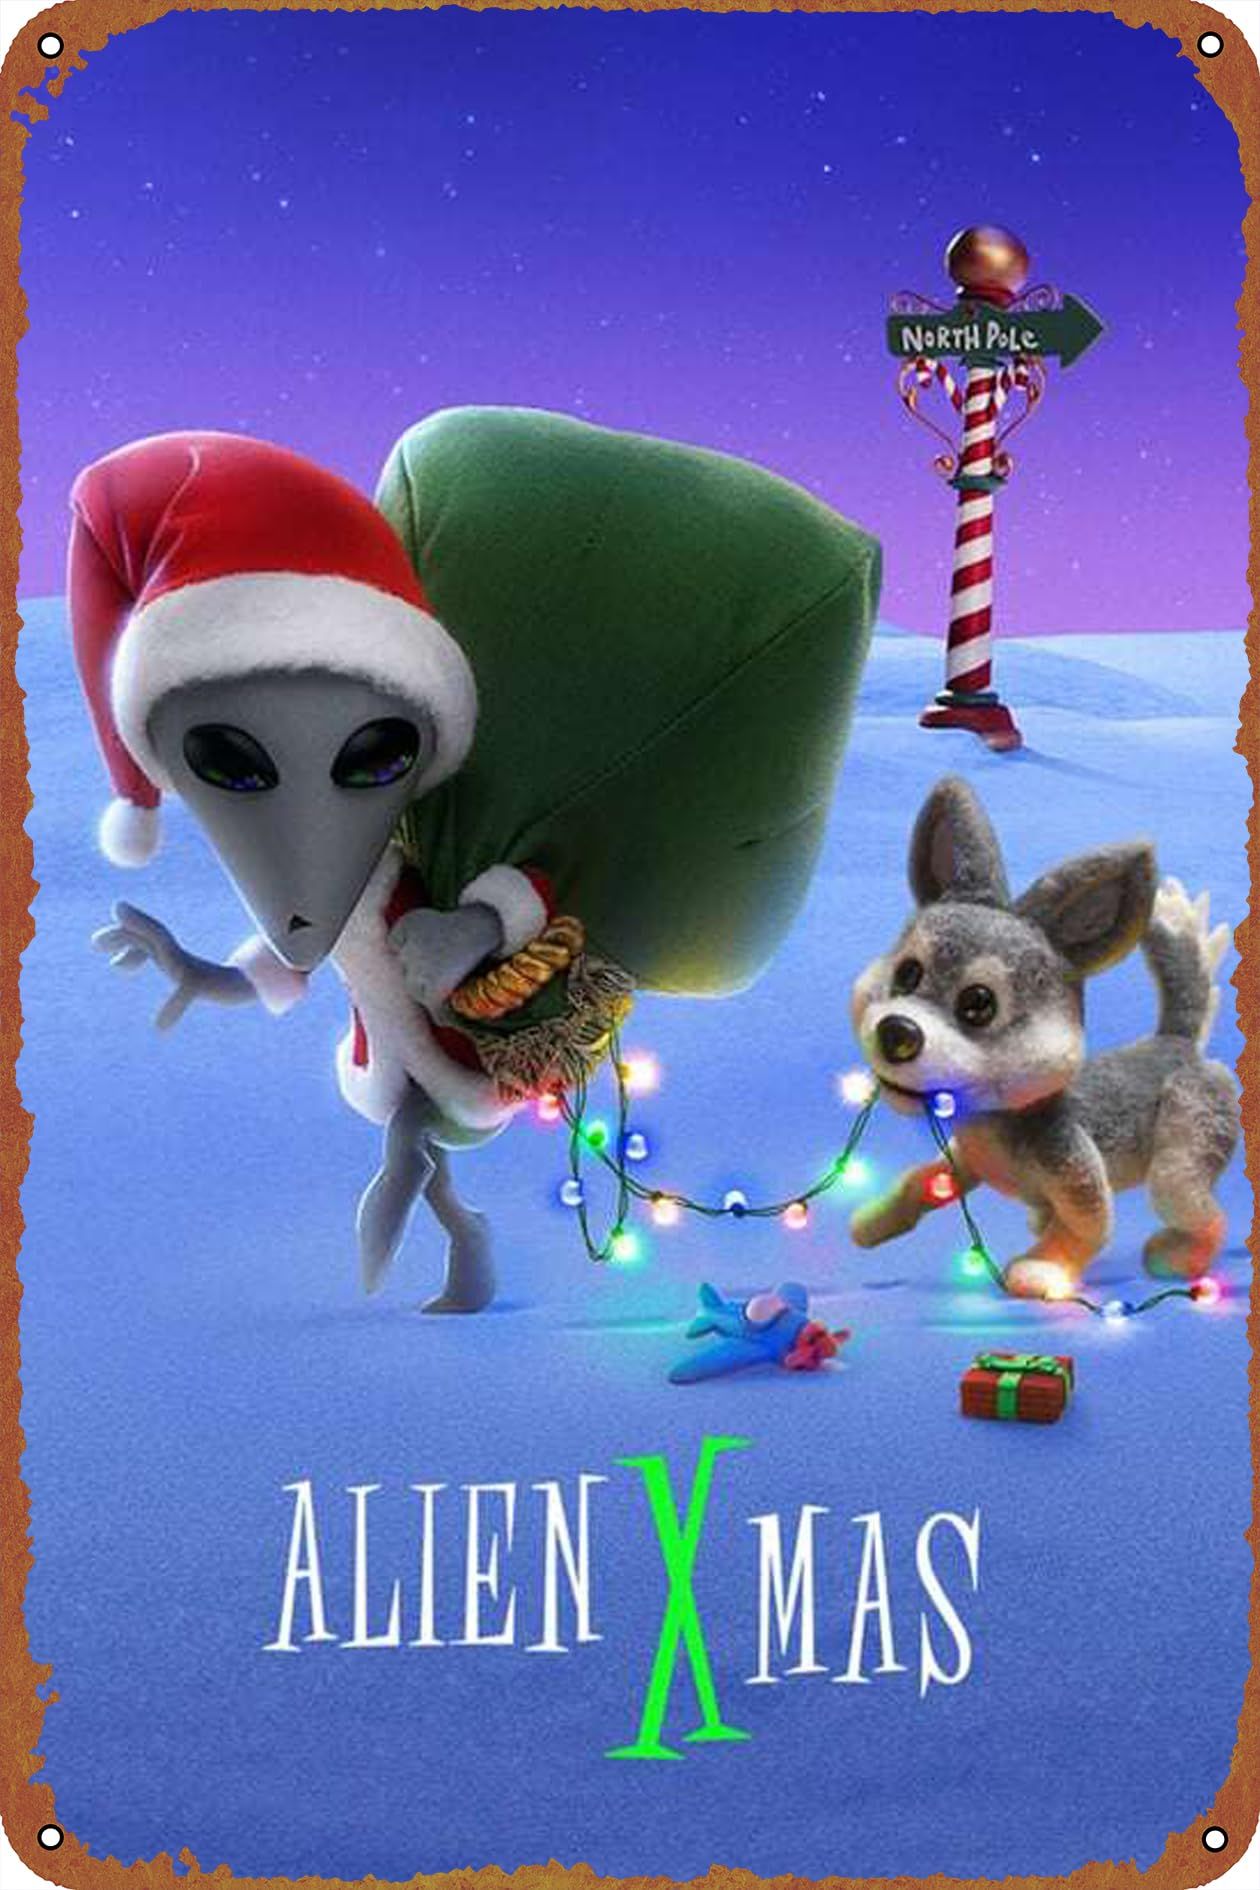 alien xmas poster